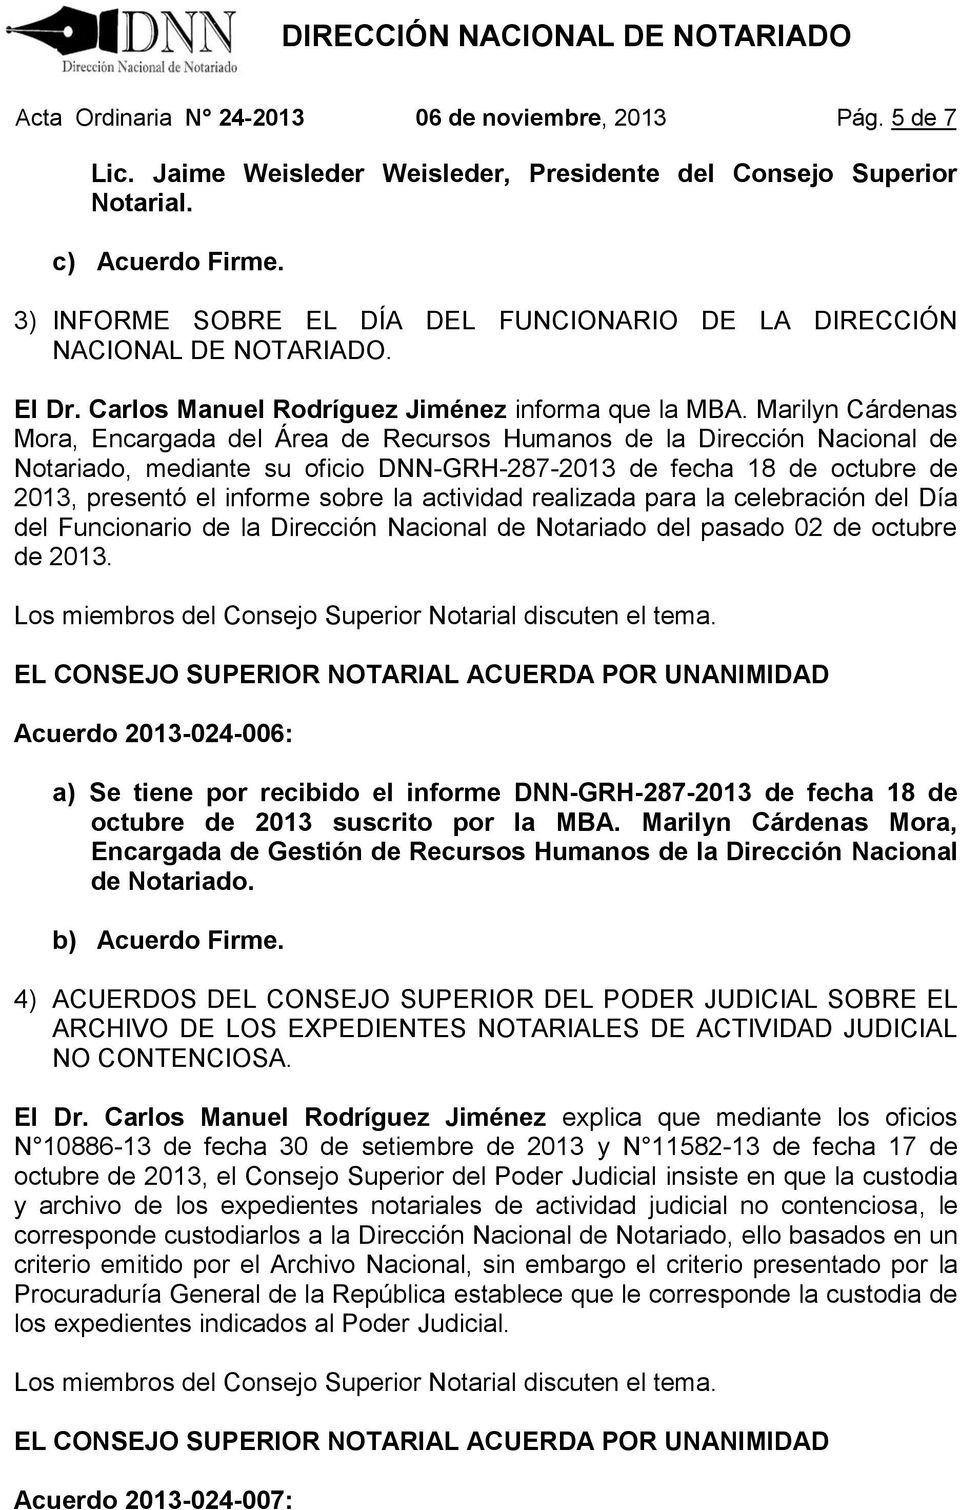 Marilyn Cárdenas Mora, Encargada del Área de Recursos Humanos de la Dirección Nacional de Notariado, mediante su oficio DNN-GRH-287-2013 de fecha 18 de octubre de 2013, presentó el informe sobre la